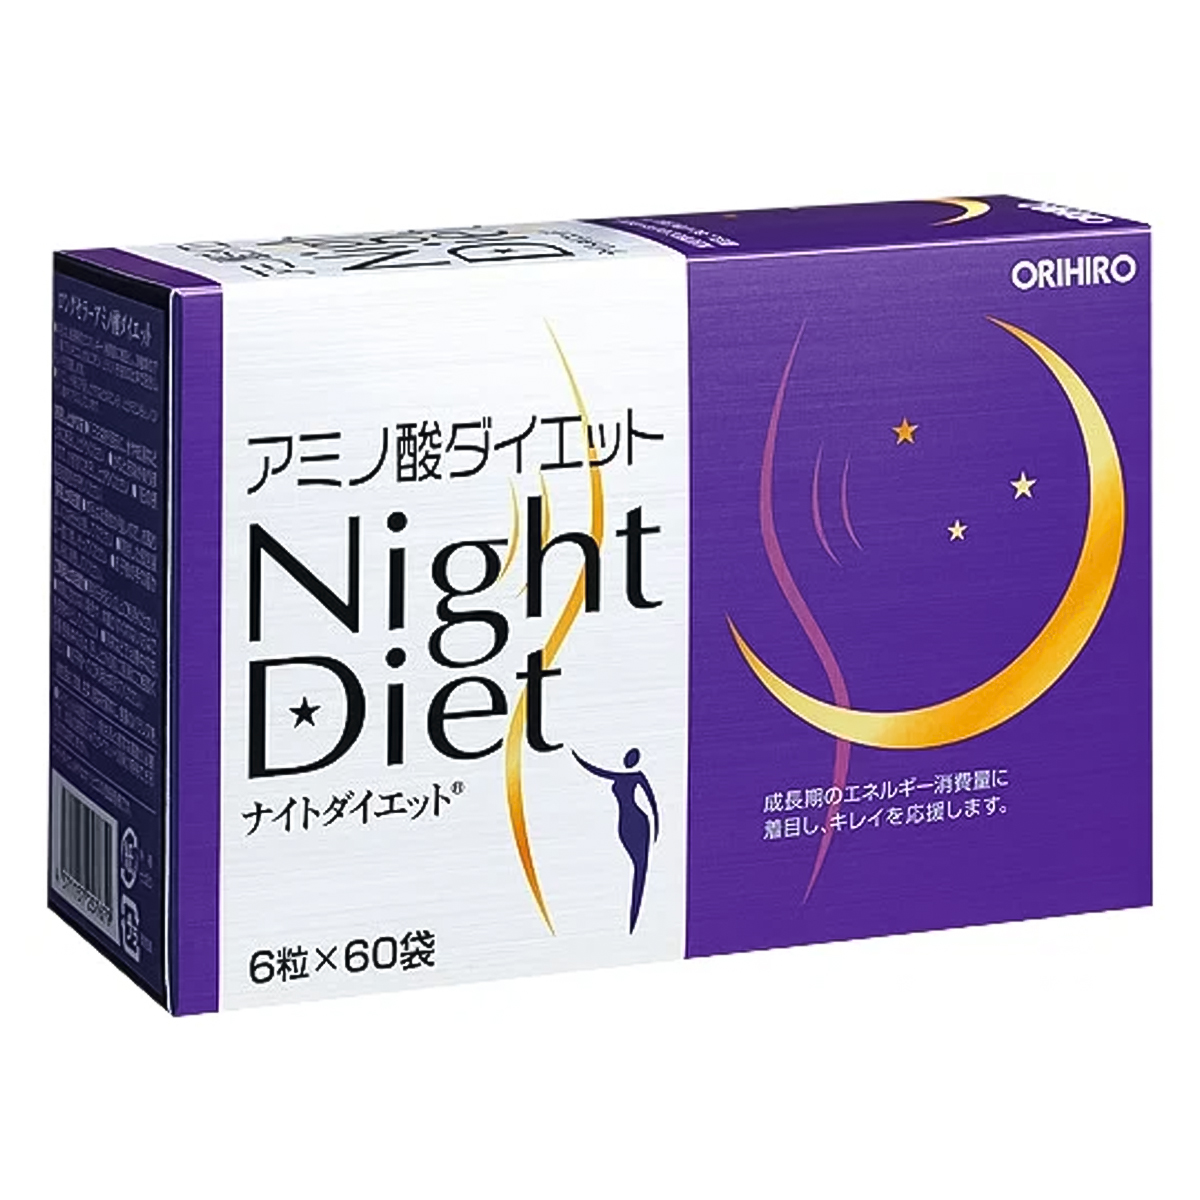 Ночная диета, 360 таблеток, ORIHIRO, годен до 15.11.23